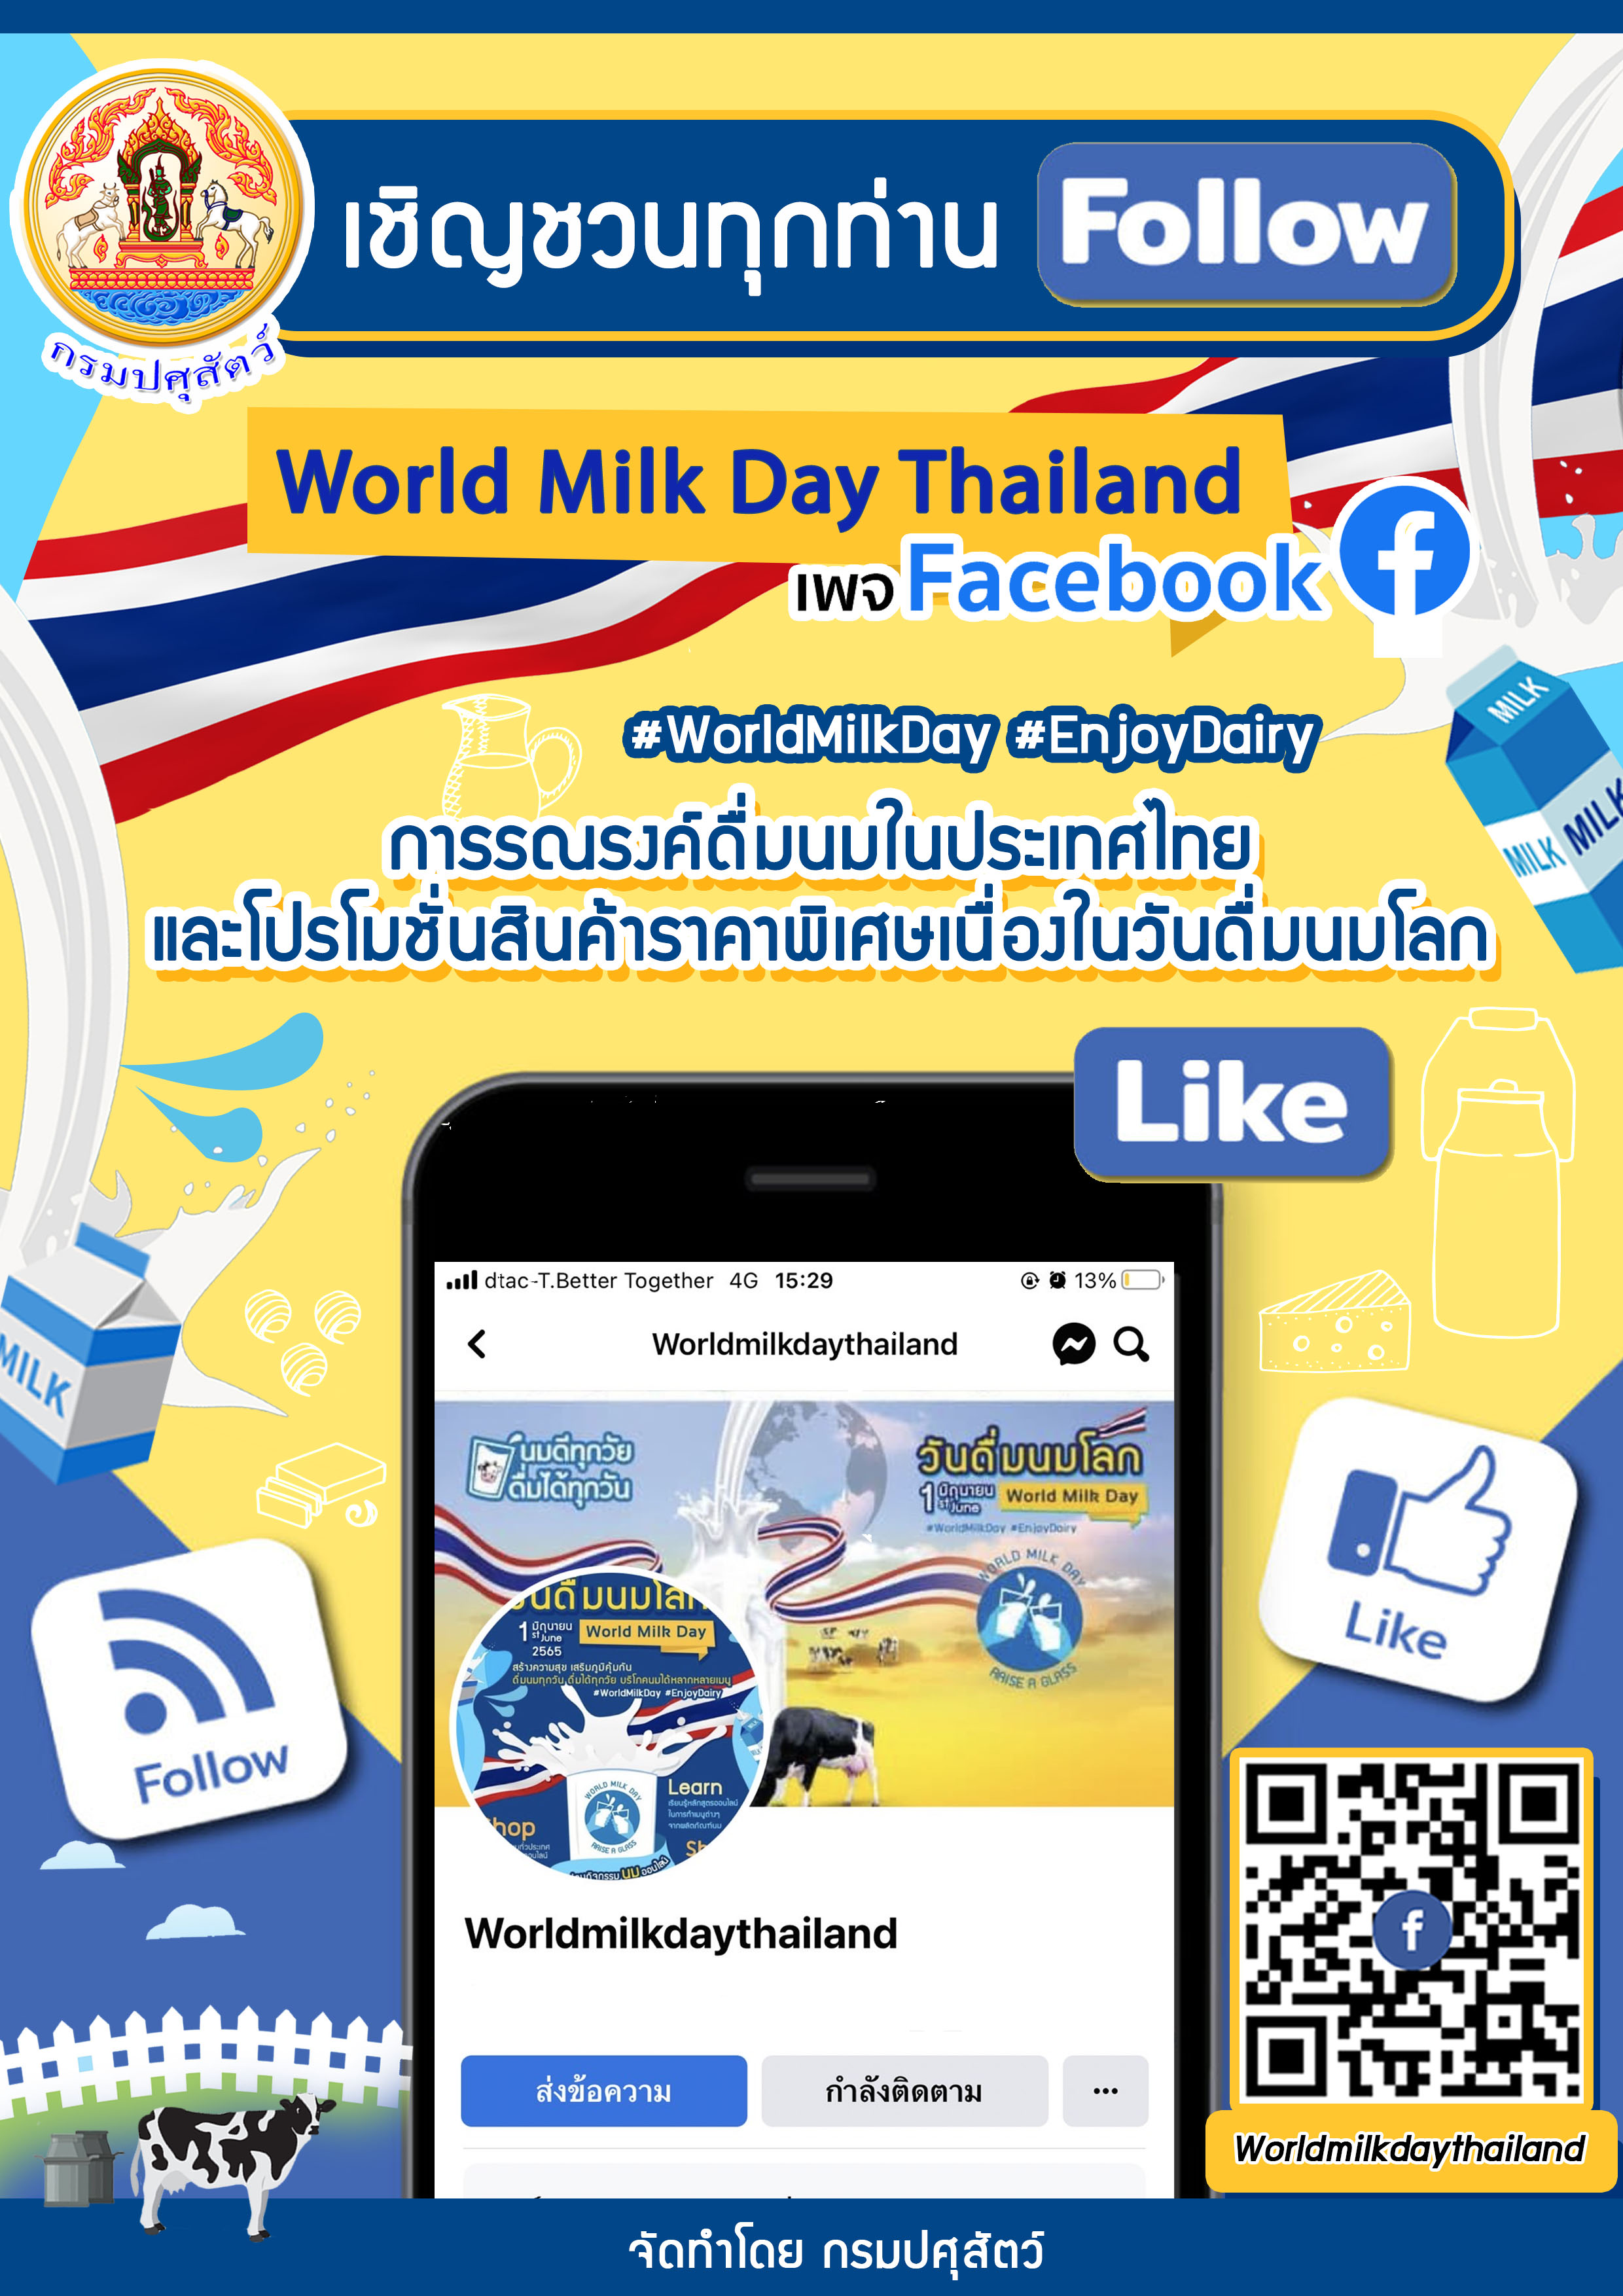  กรมปศุสัตว์ เชิญชวนทุกท่านติดตามเพจ Facebook : Worldmilkdaythailand